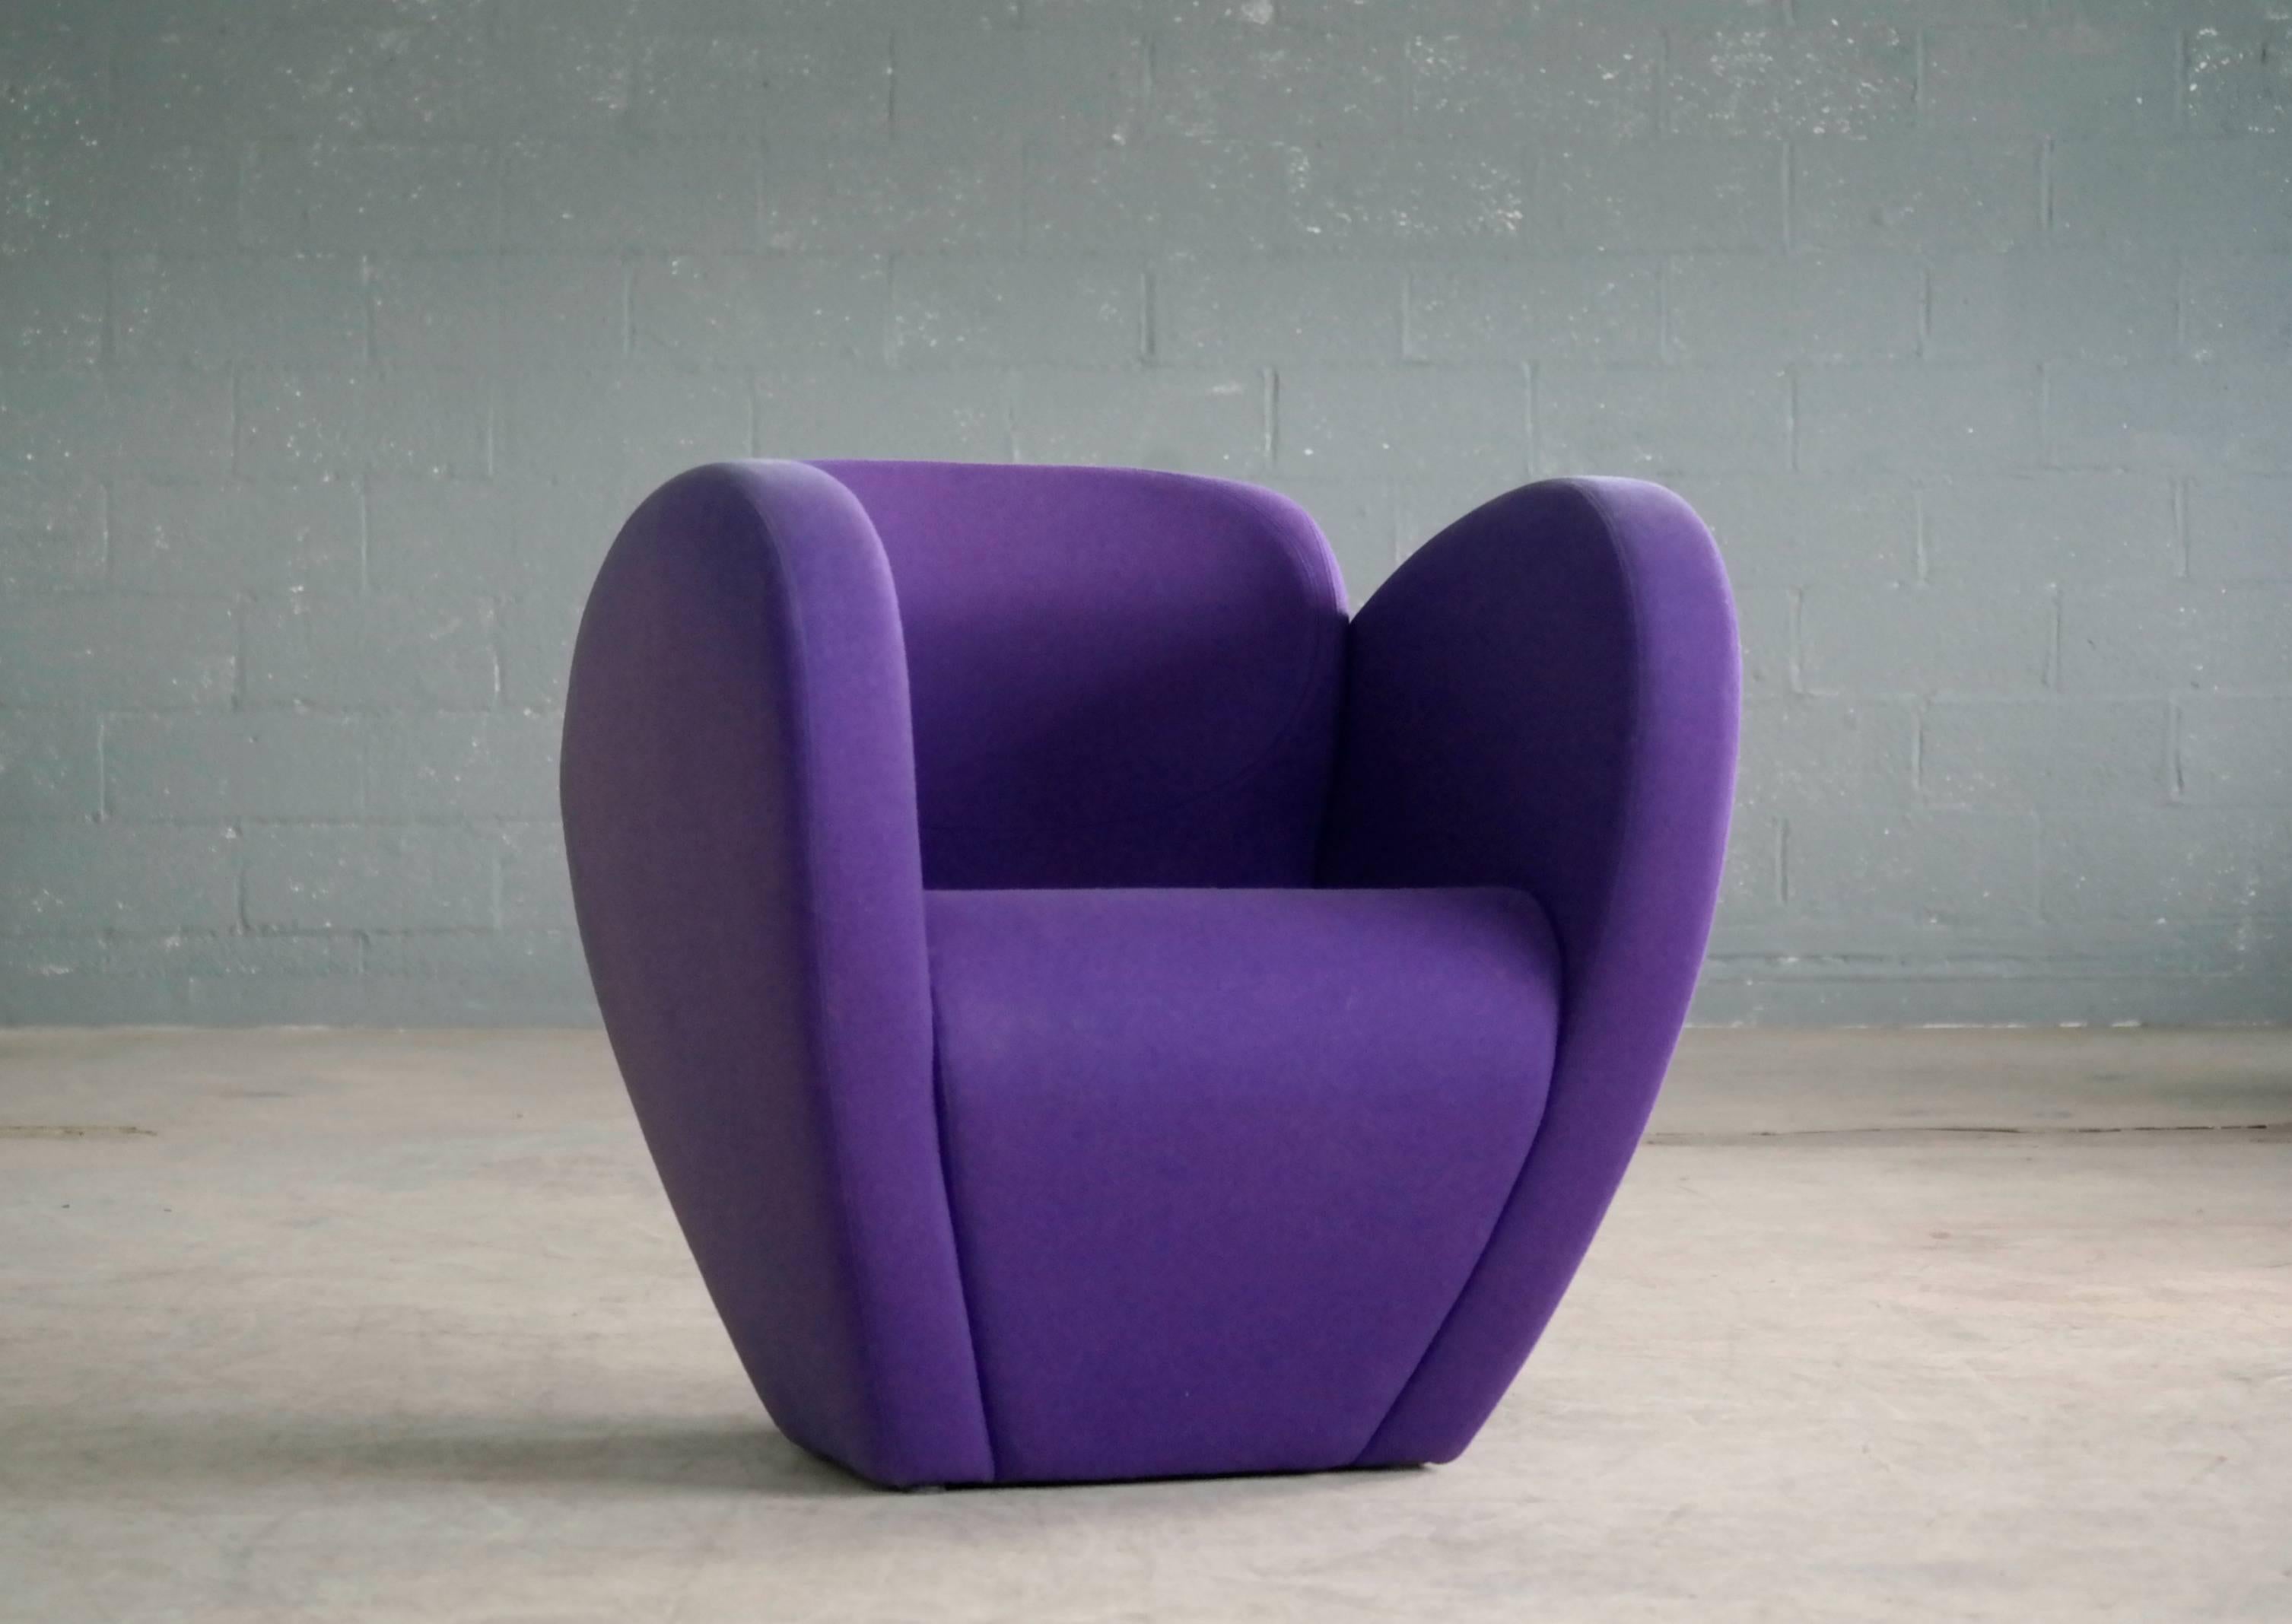 Dieser erstaunliche Sessel aus der Spring Collection wurde 1991 von dem berühmten Ron Arad für Moroso in Italien entworfen. Das Gestell ist mit Polyurethanschaum gepolstert und mit einem weichen lila Wollfilzstoff bezogen. Außergewöhnliche Linien